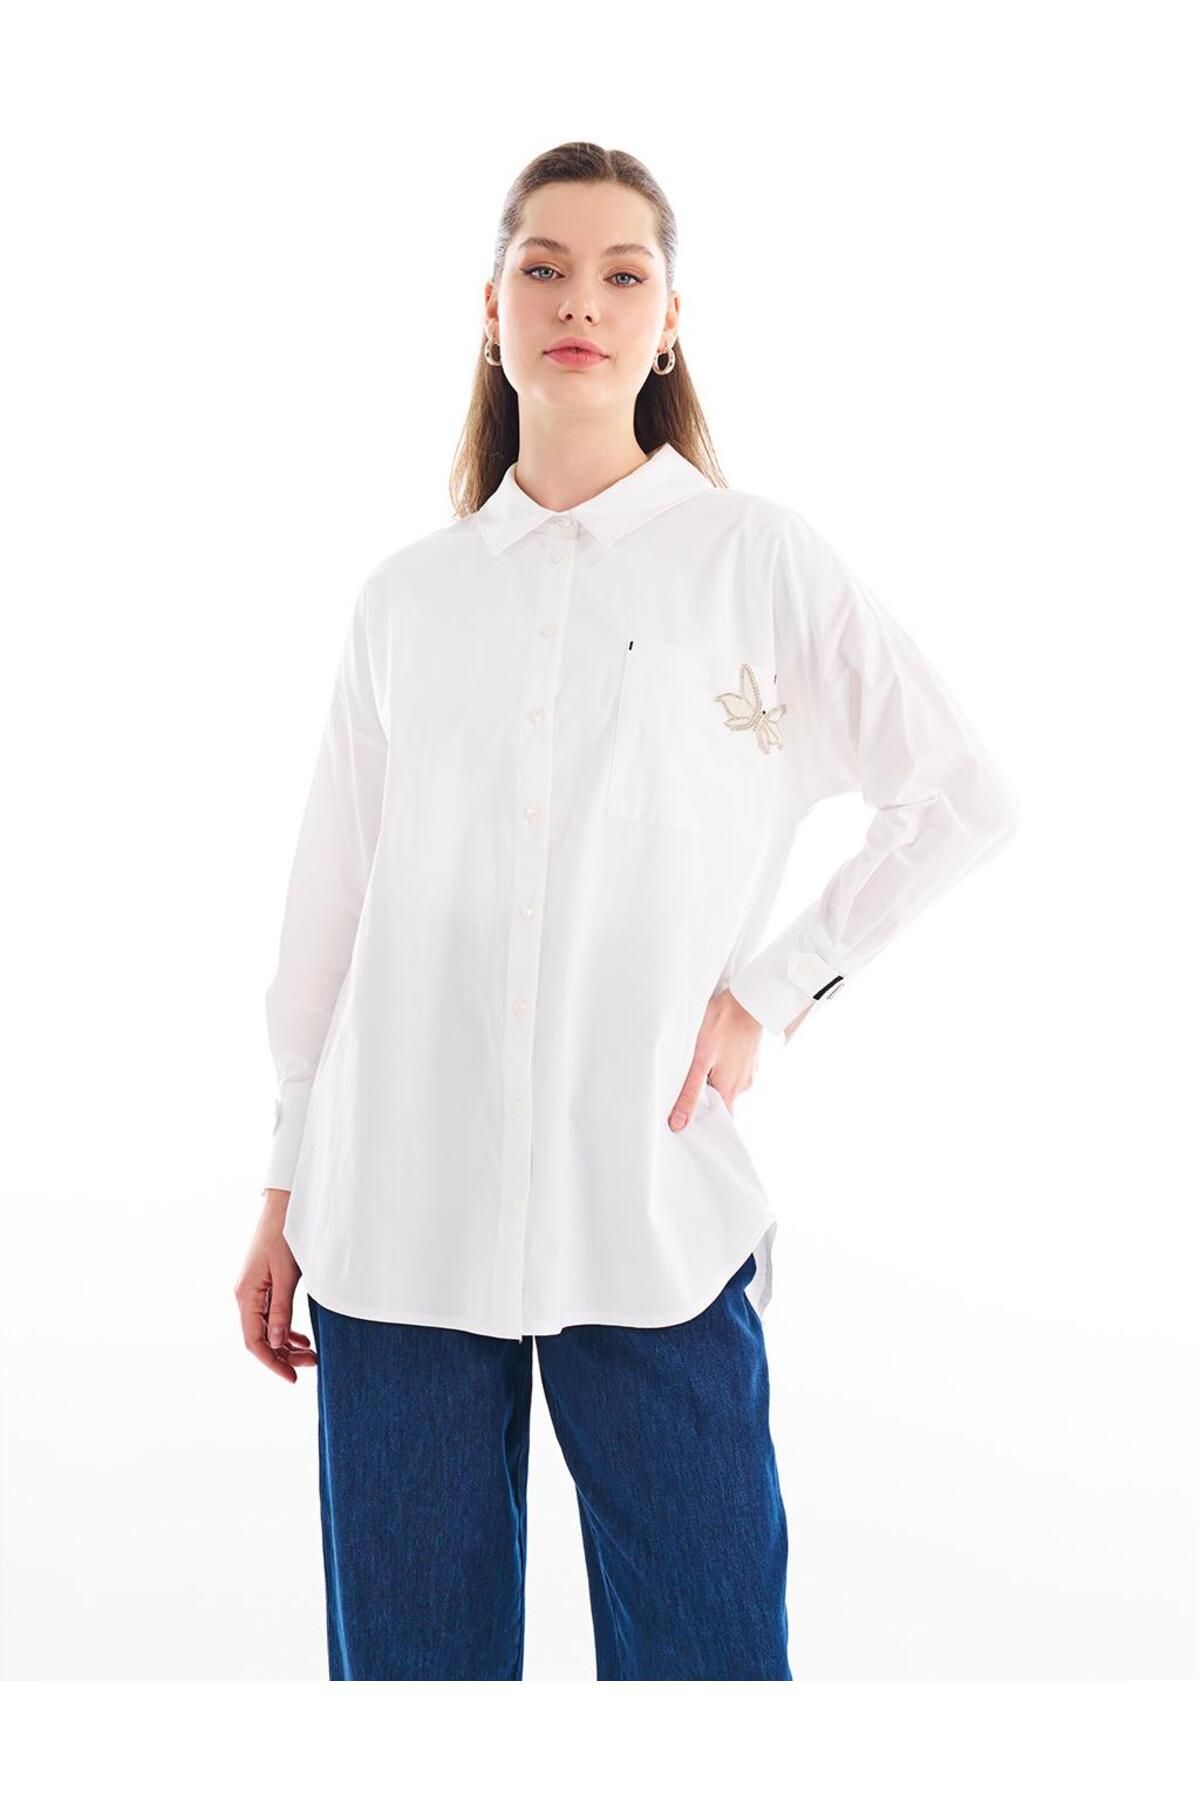 Kayra Aksesuar Detaylı Gömlek Yaka Tunik Optik Beyaz